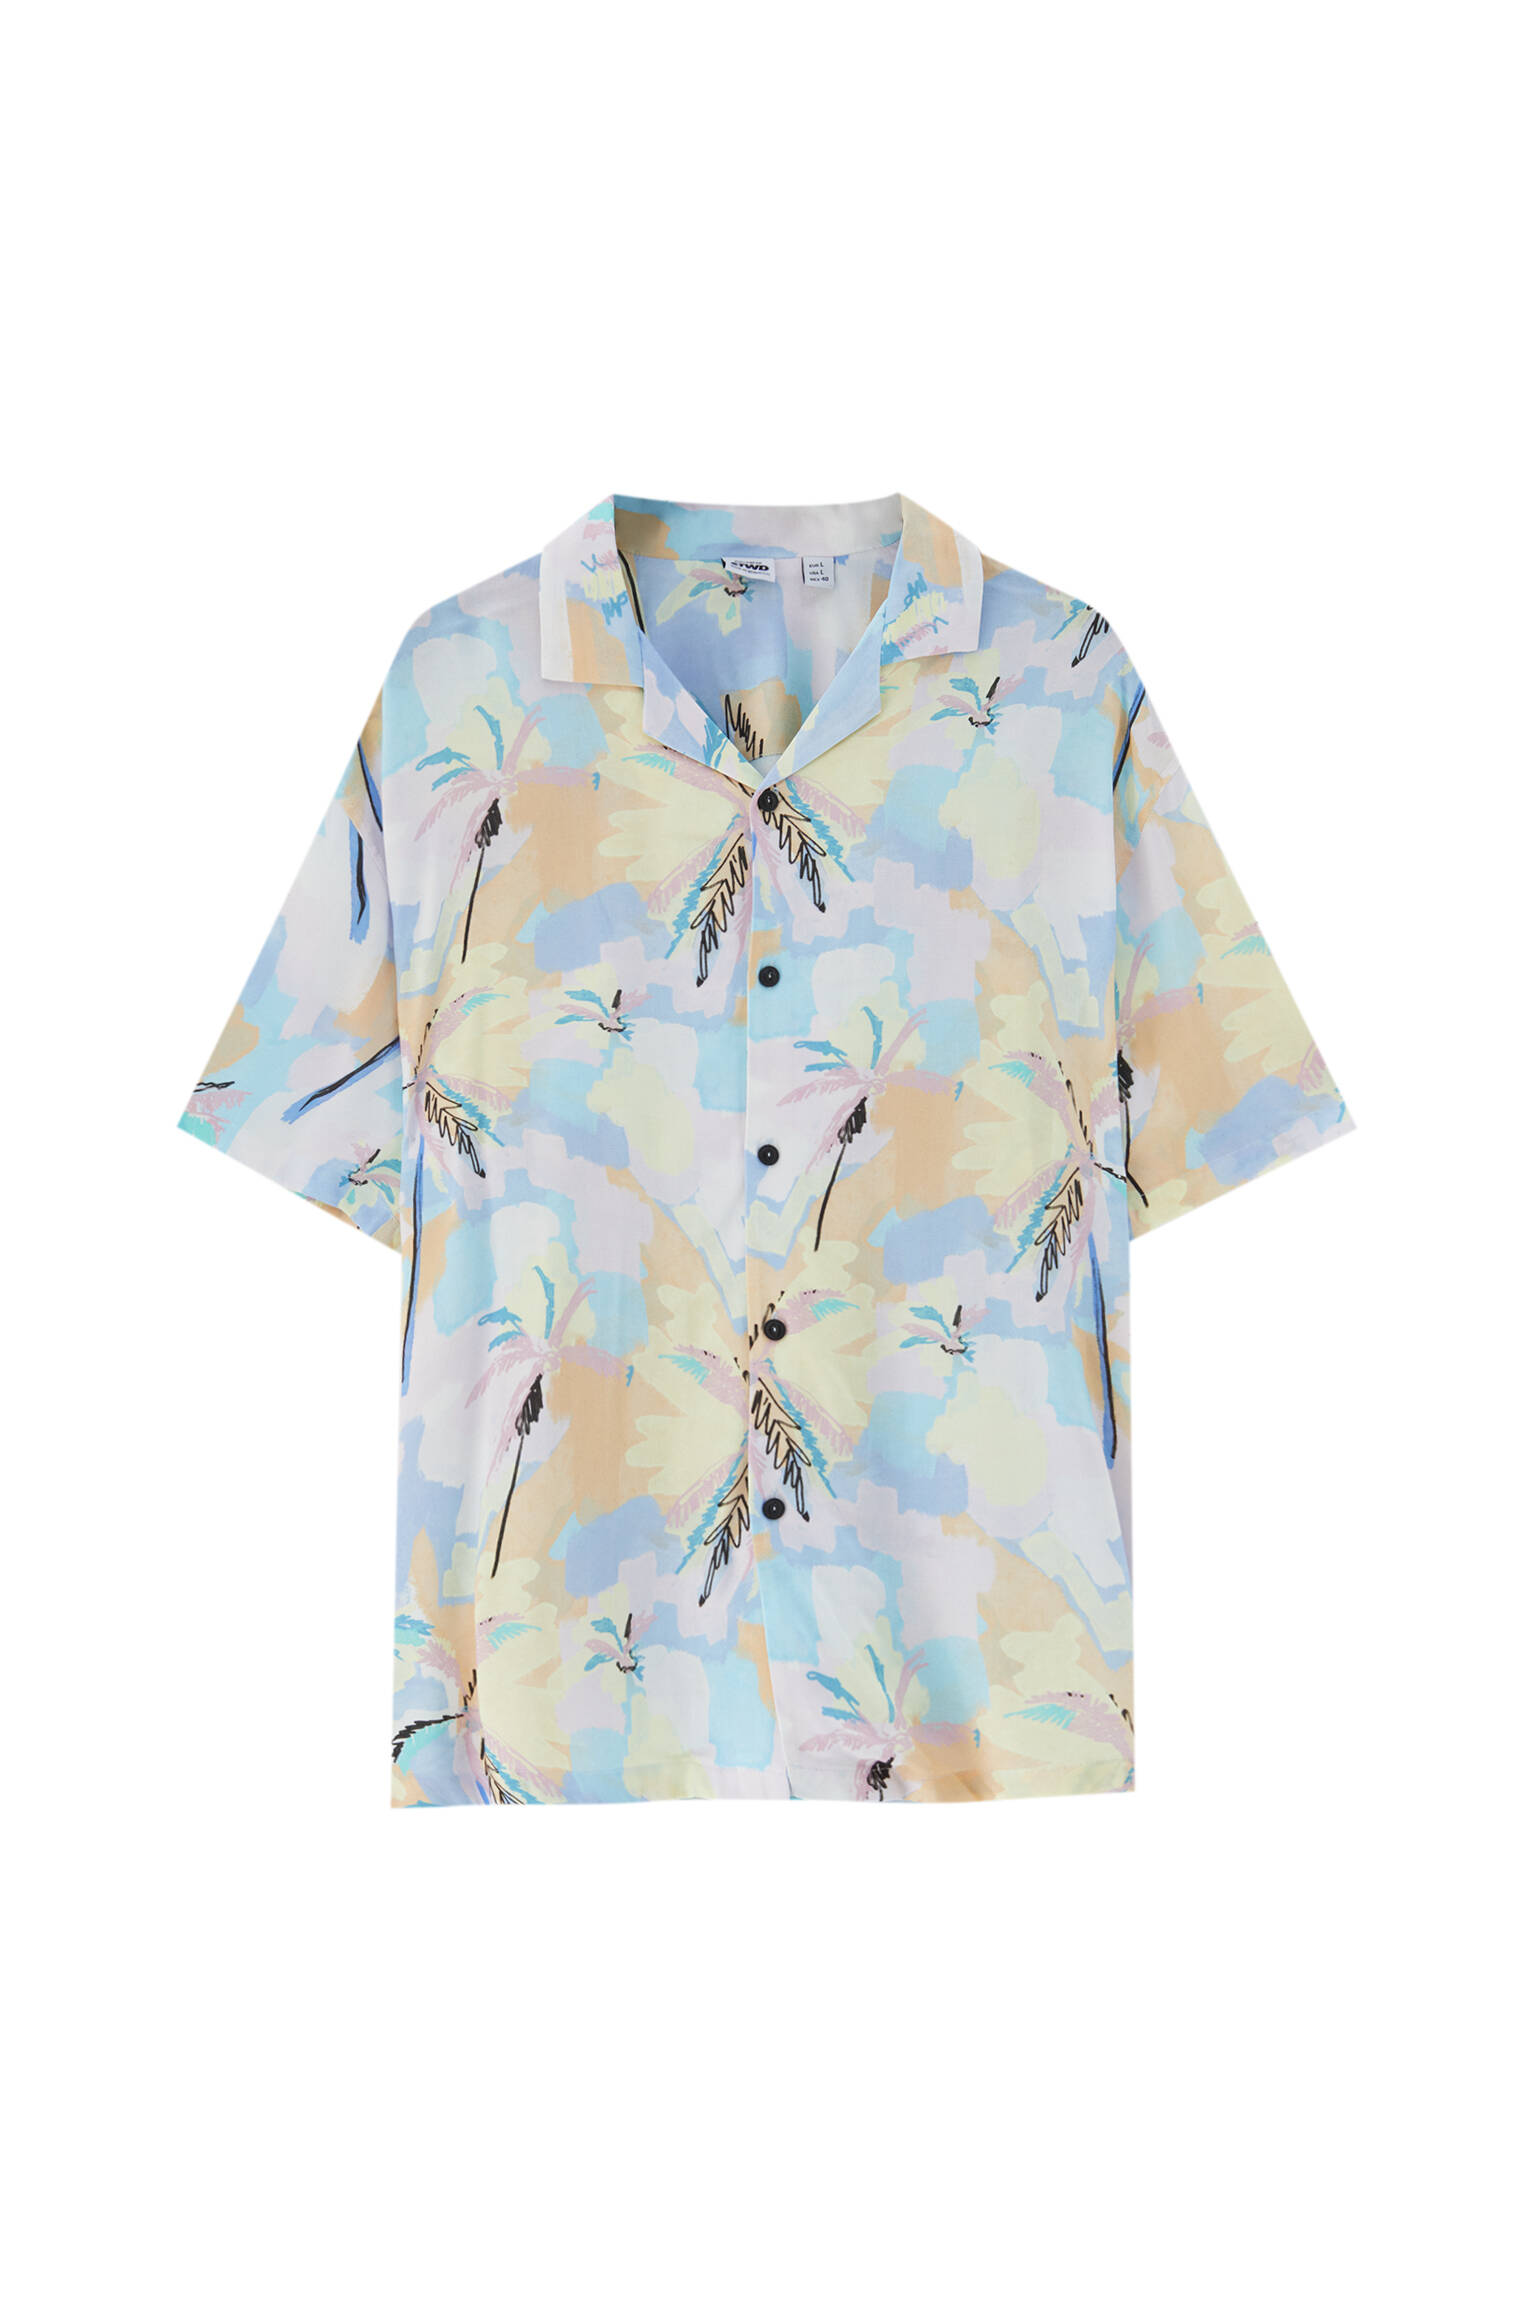 БИРЮЗОВЫЙ Рубашка с разноцветным принтом «Пальмы» - 100% вискоза ECOVEROTM Pull & Bear